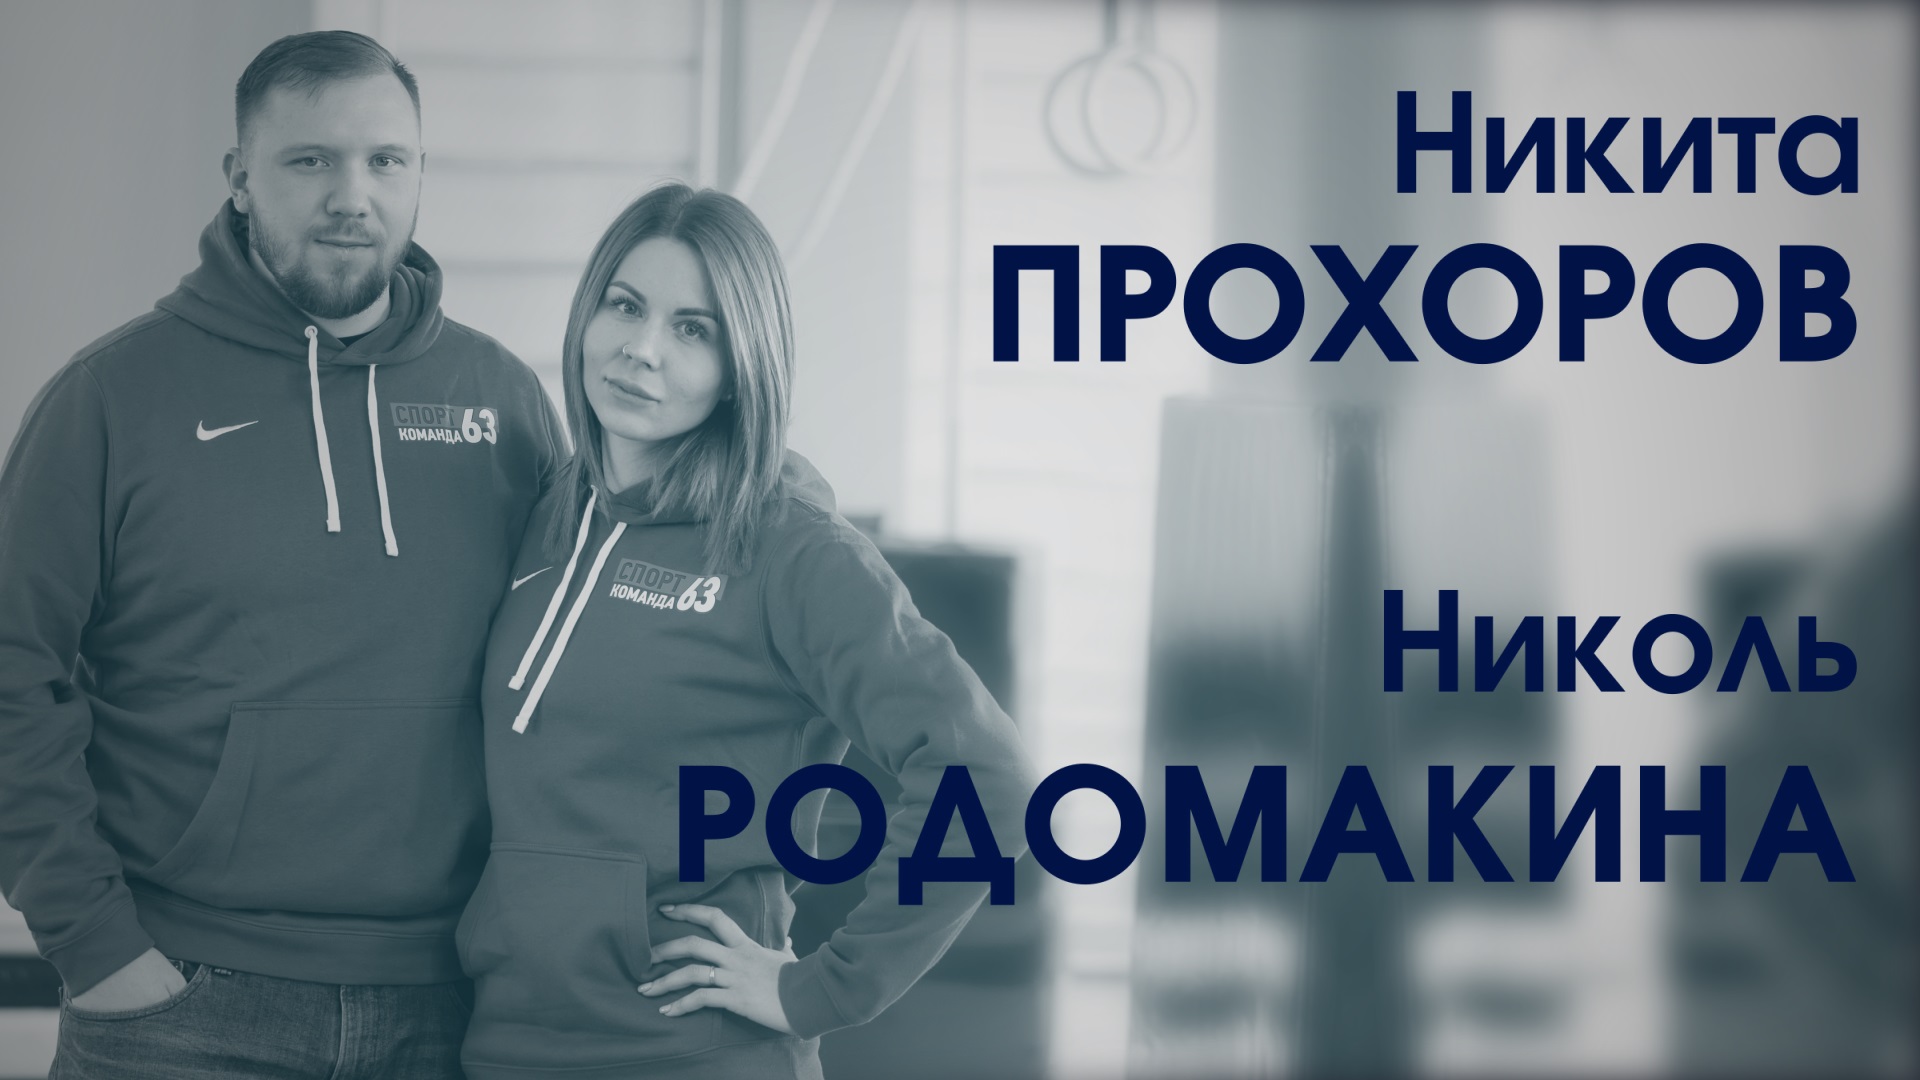 Николь Родомакина и Никита Прохоров